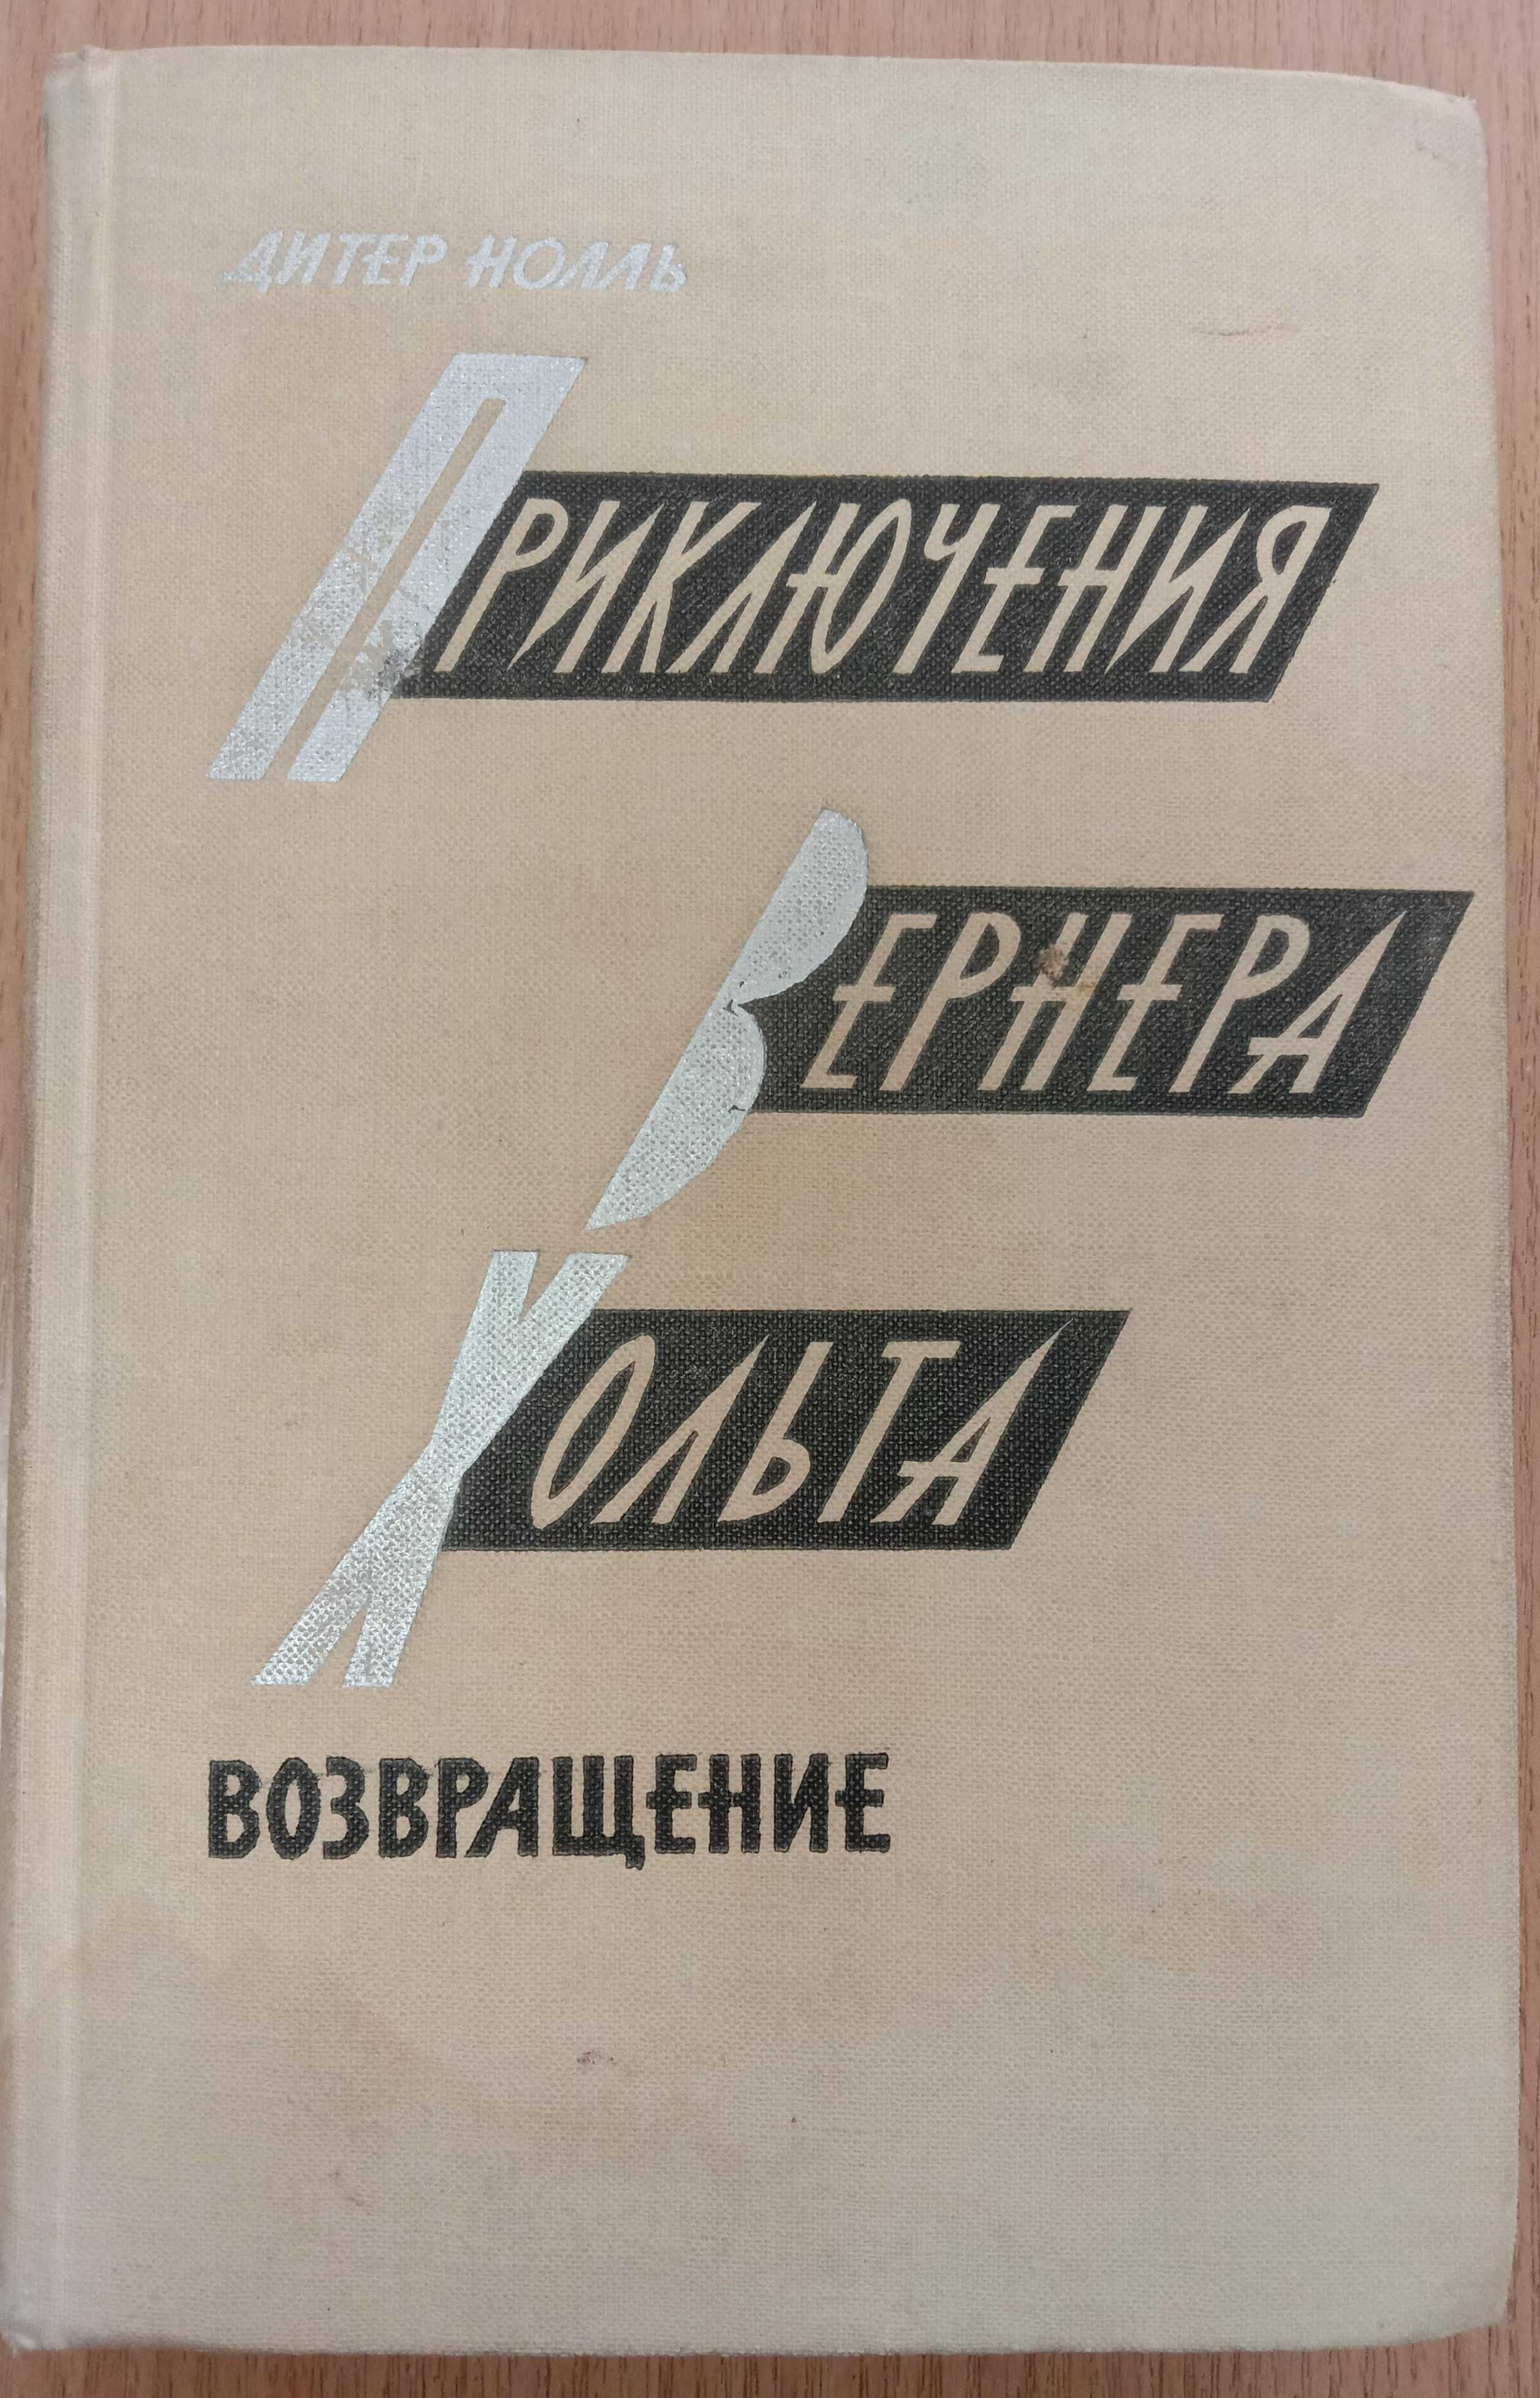 Книга «Приключения ВЕРНЕРА ХОЛЬТА. Возвращение». 1965 Дитер Нолль